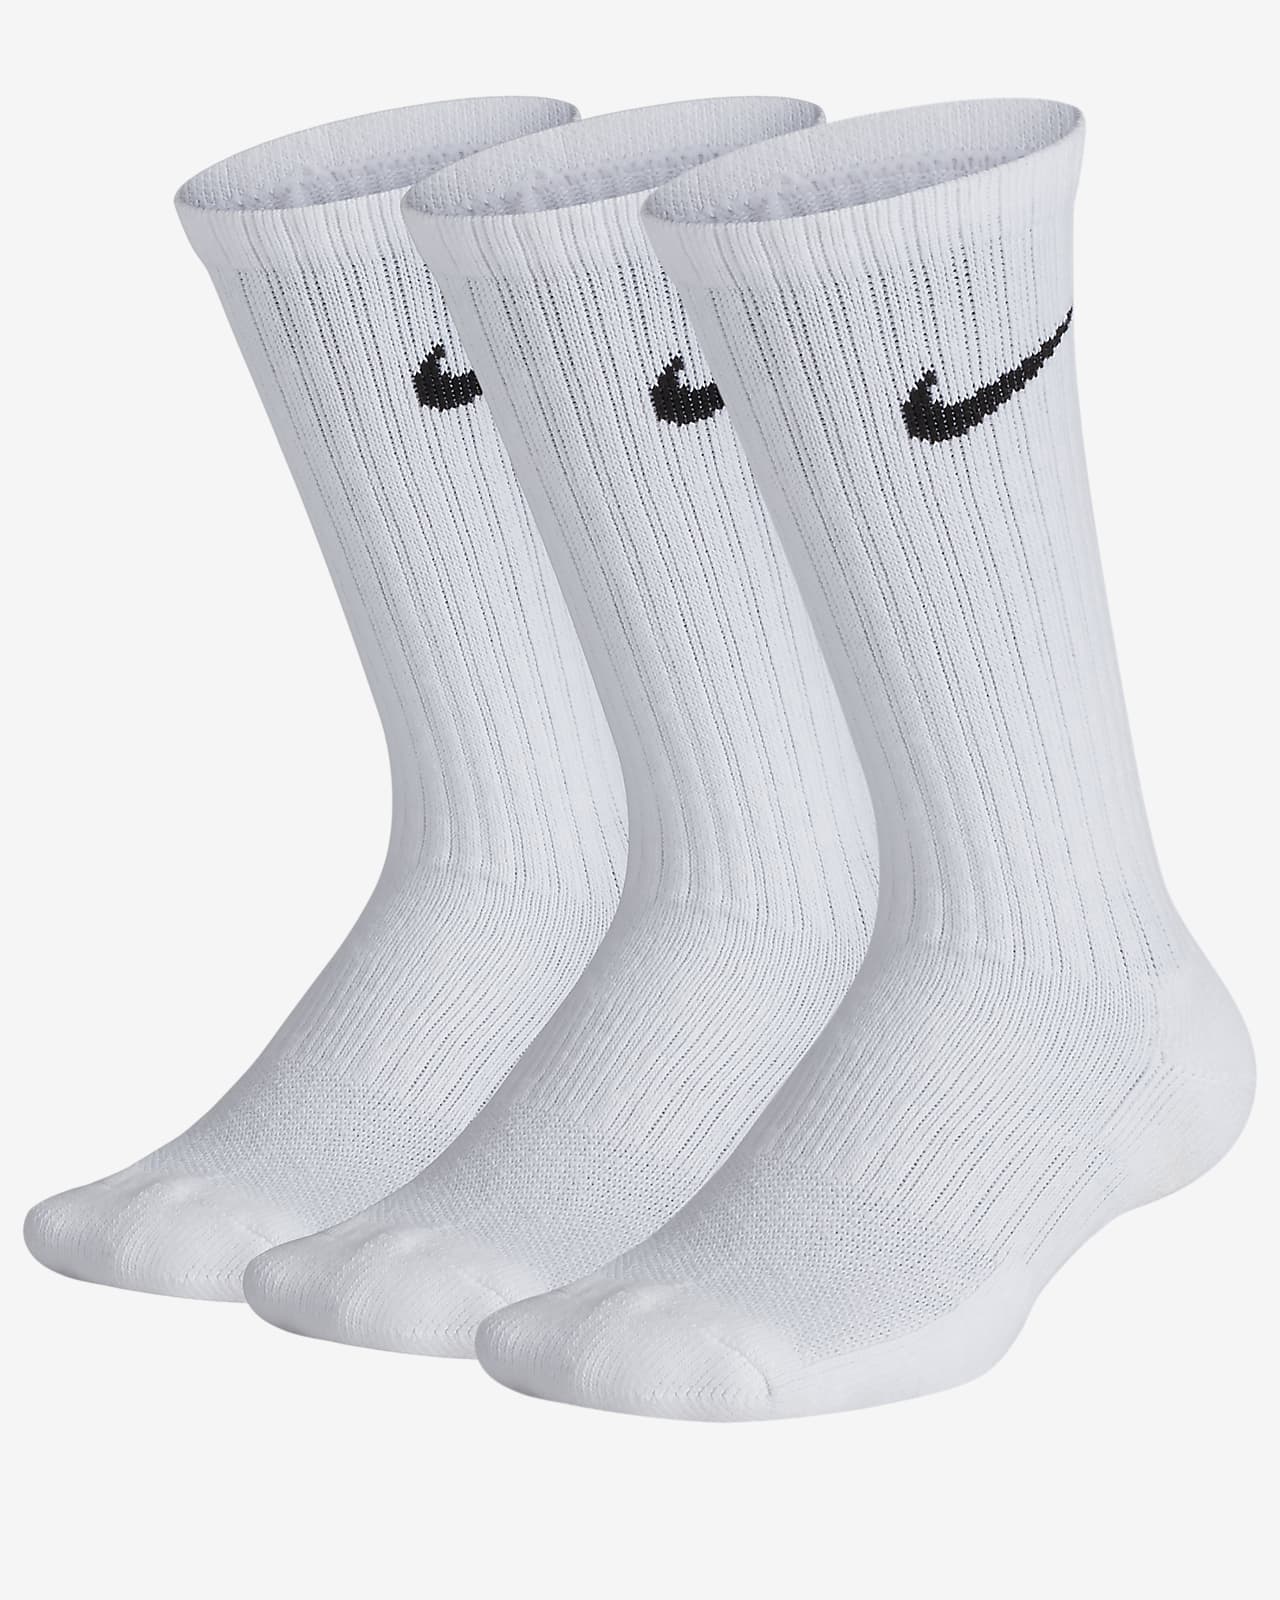 nike high top socks